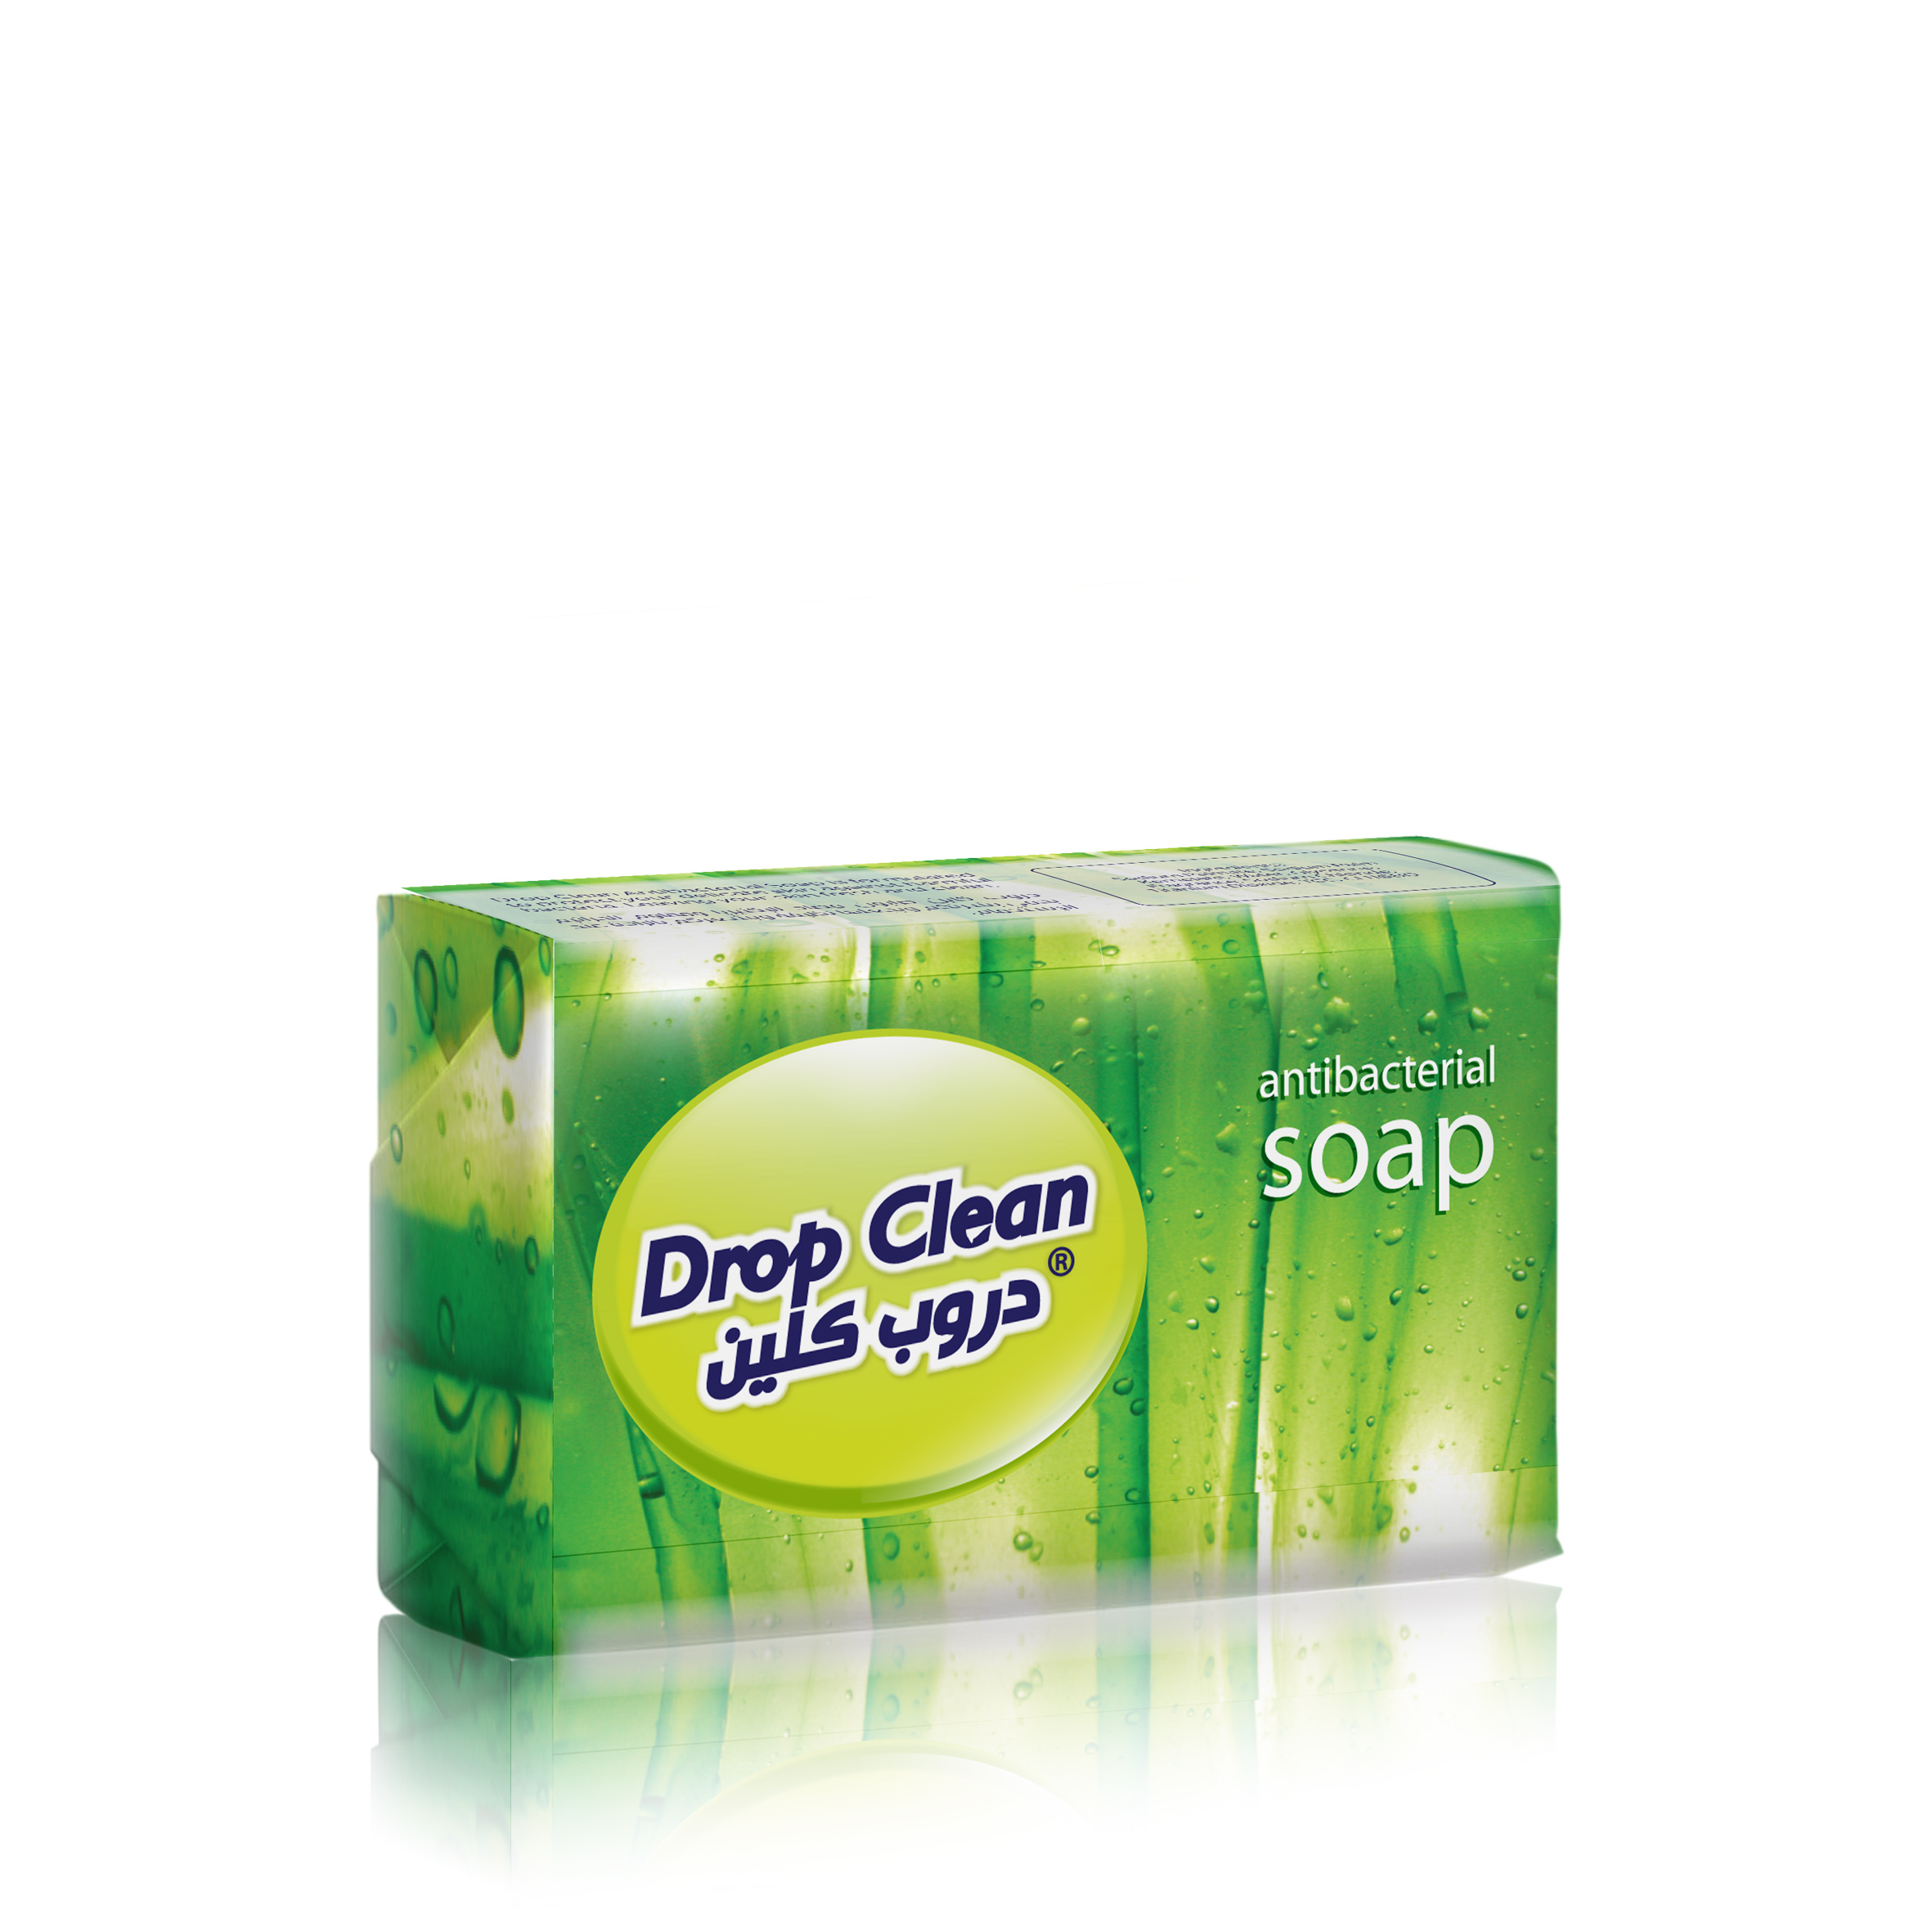 Drop Clean Antibacterial Soap